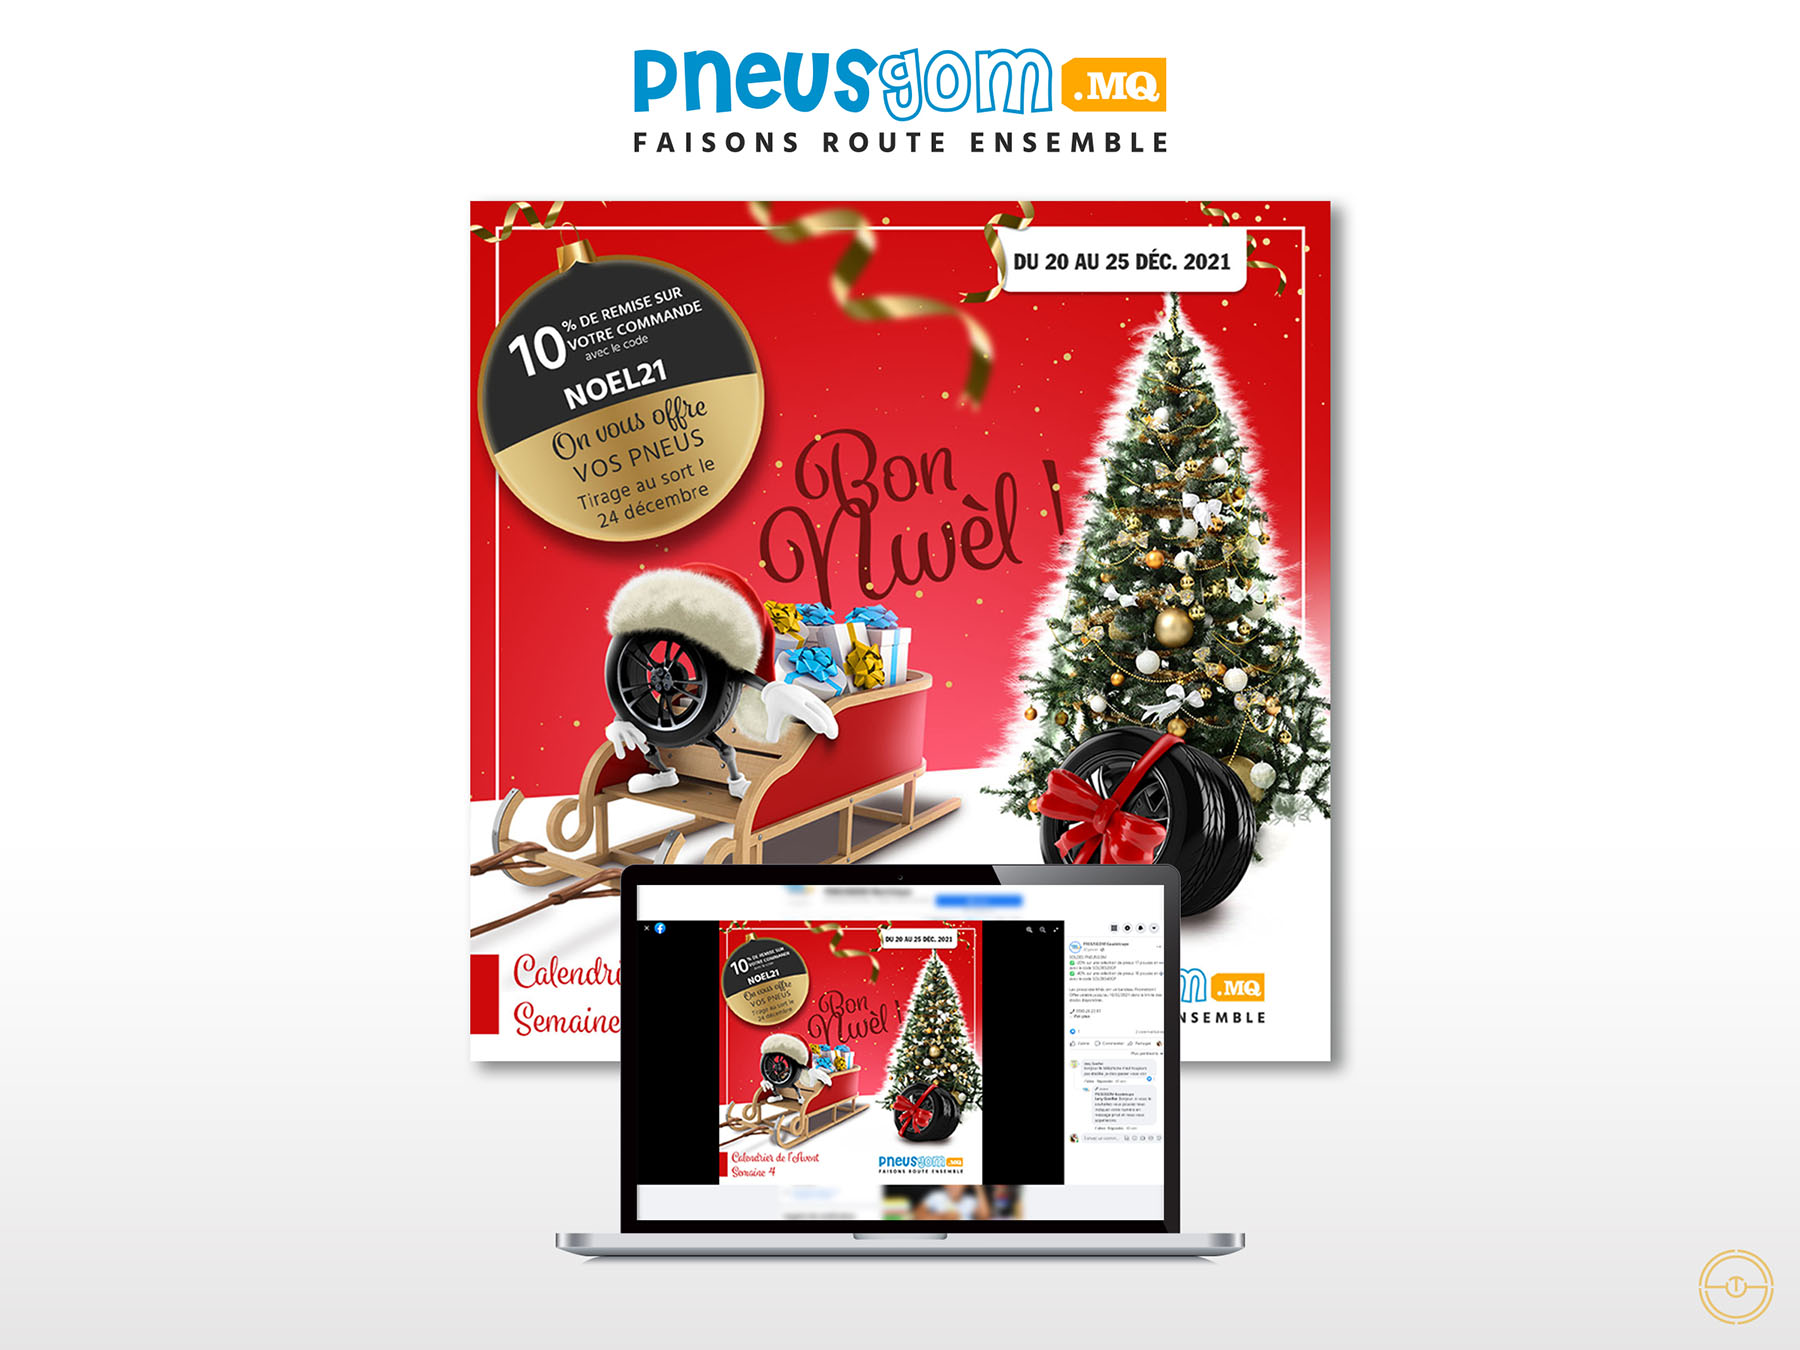 Visuel de Noël en Martinique pour la marque Pneusgom